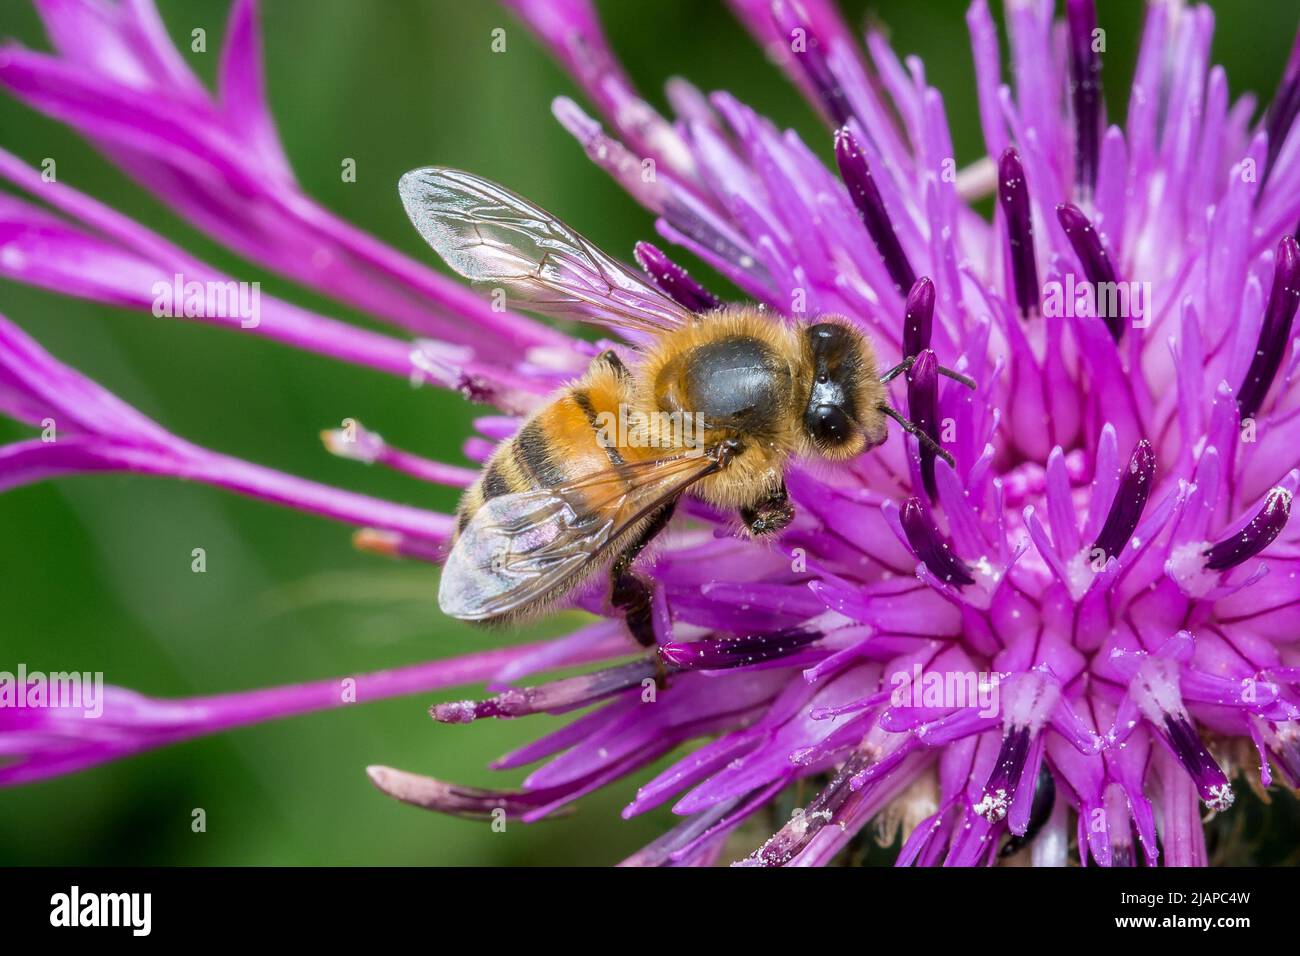 Une abeille européenne (APIS mellifera) sur une fleur pourpre. Prise à Nose's point, Seaham, Royaume-Uni Banque D'Images